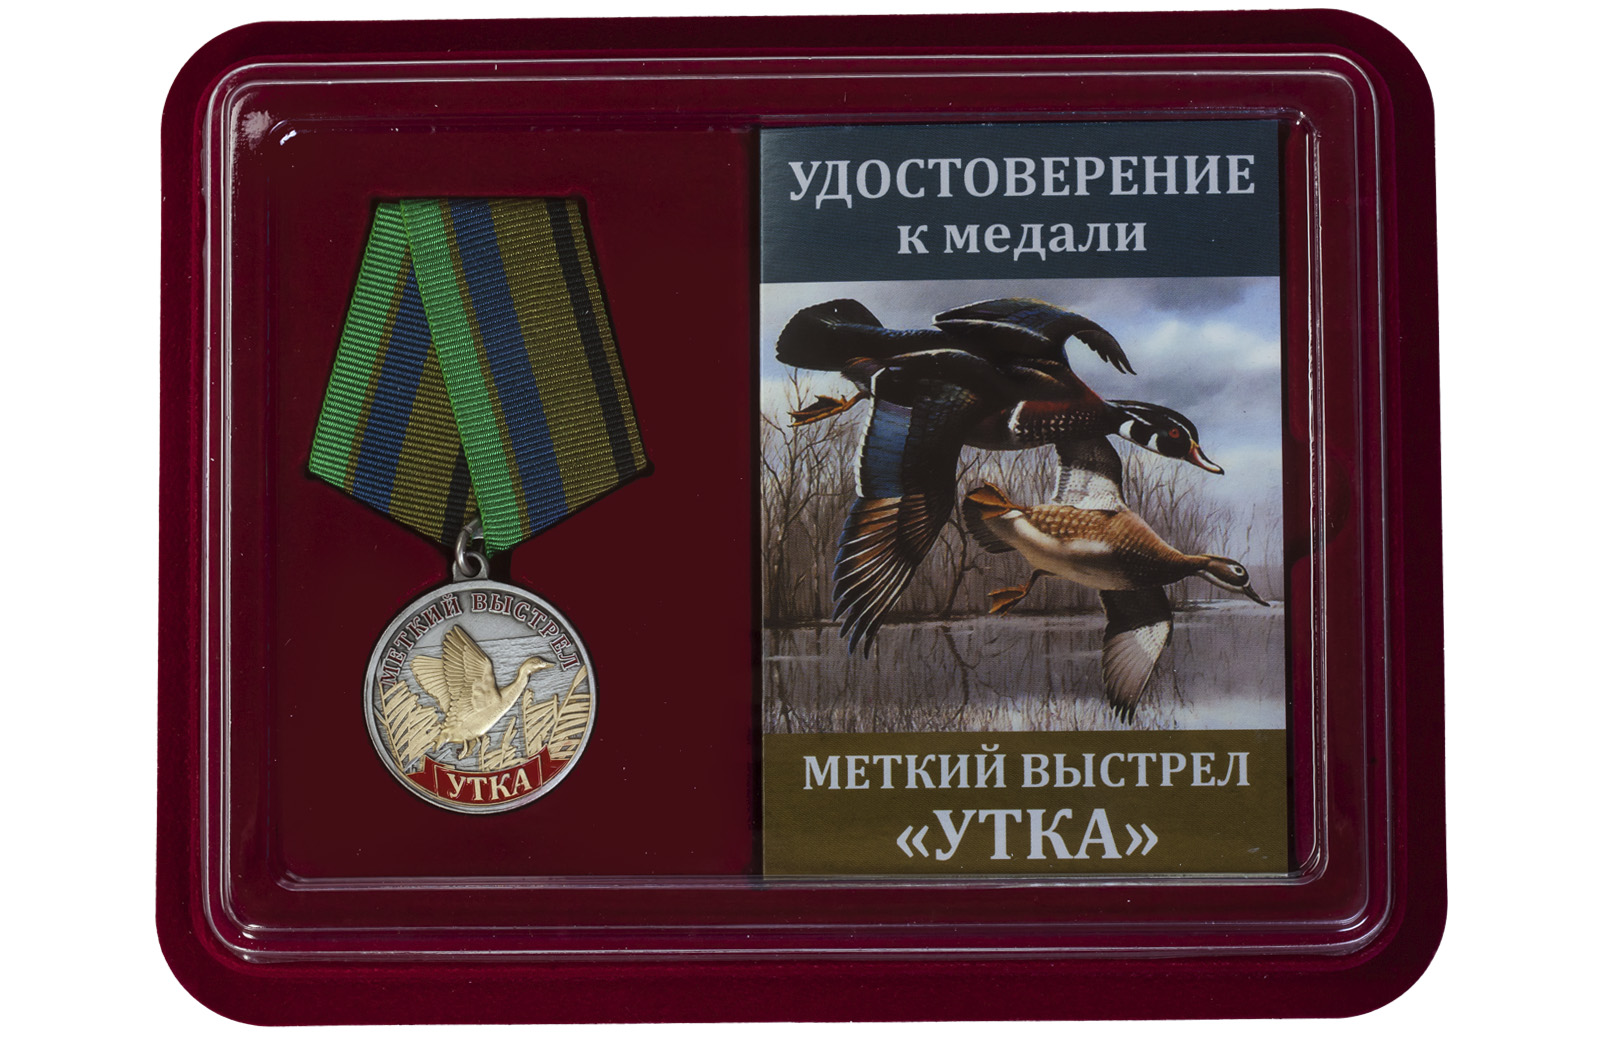 Медаль Меткий выстрел "Утка" 